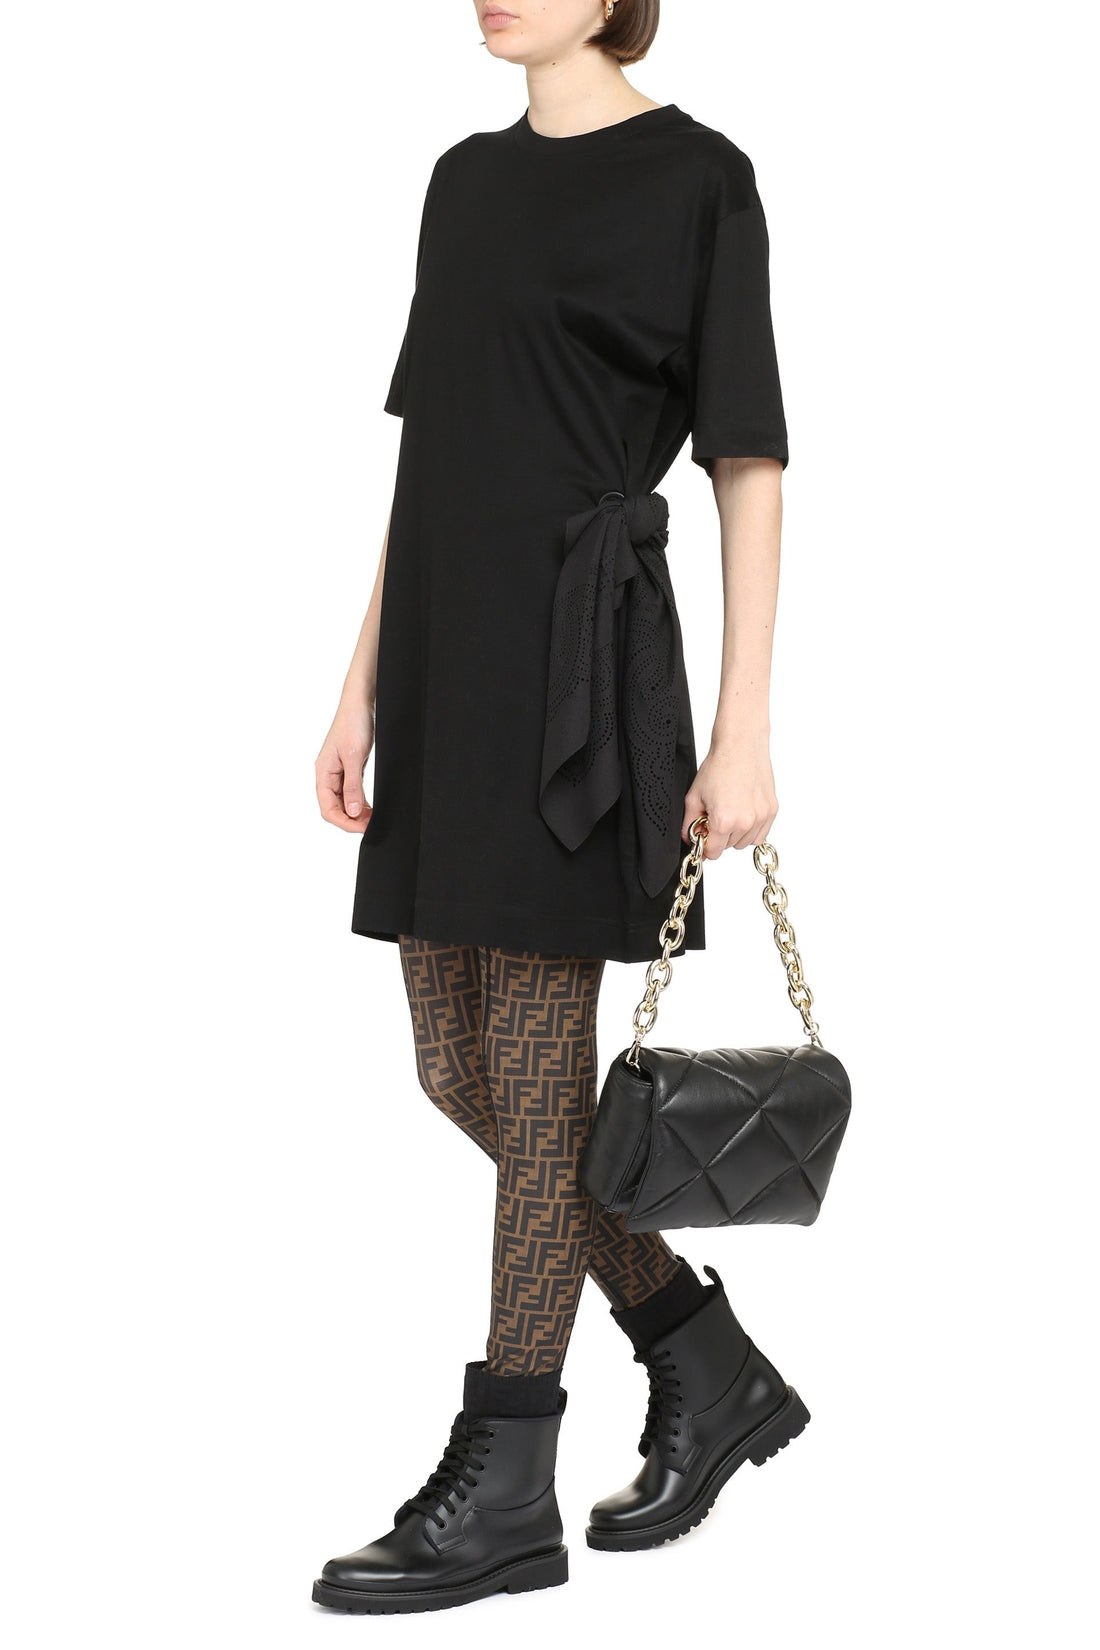 Givenchy-OUTLET-SALE-Cotton t-shirt dress-ARCHIVIST